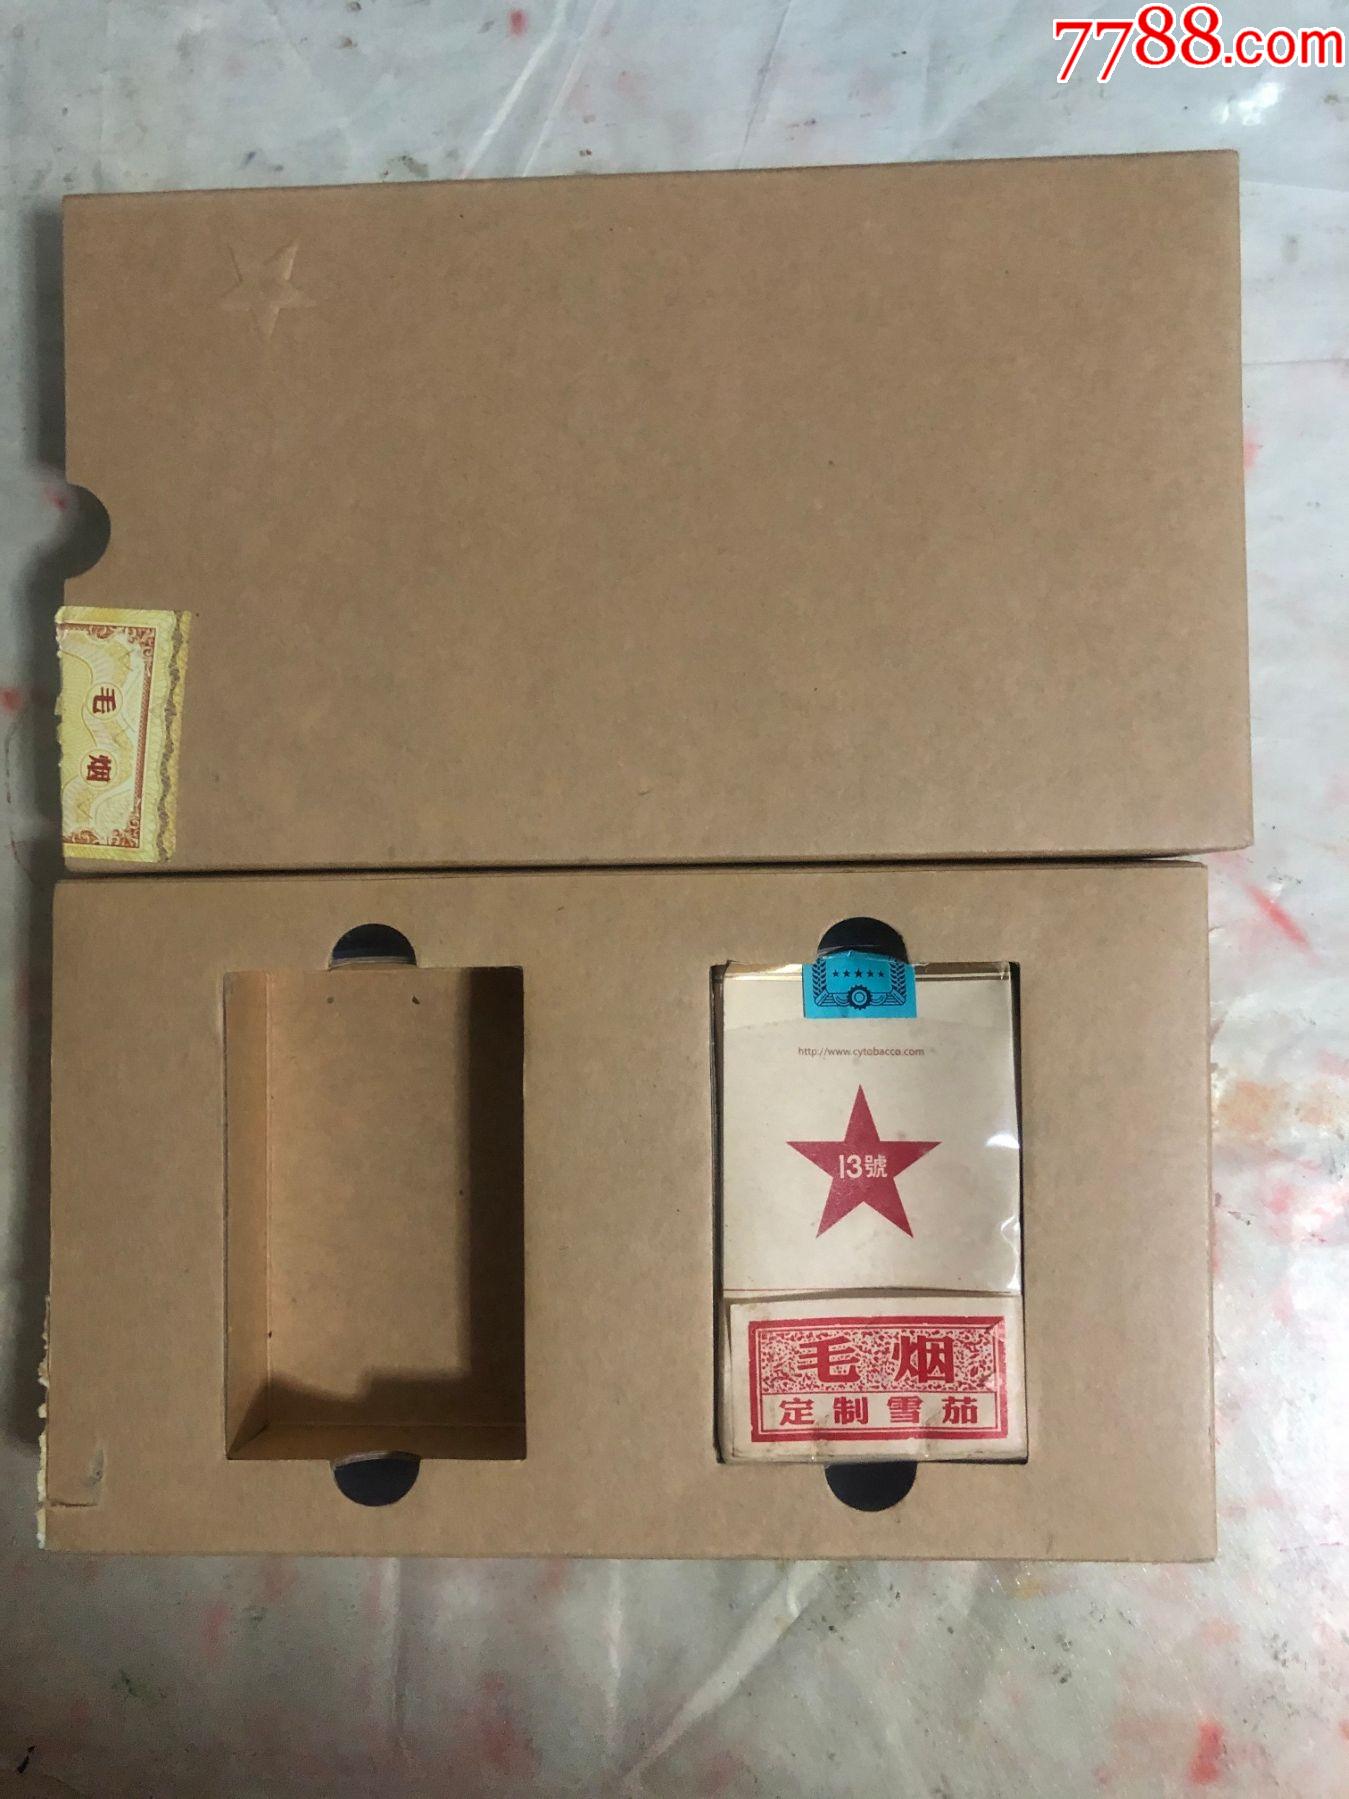 长城毛烟壹叁贰13号定制雪茄软包烟壳一个礼品盒一个